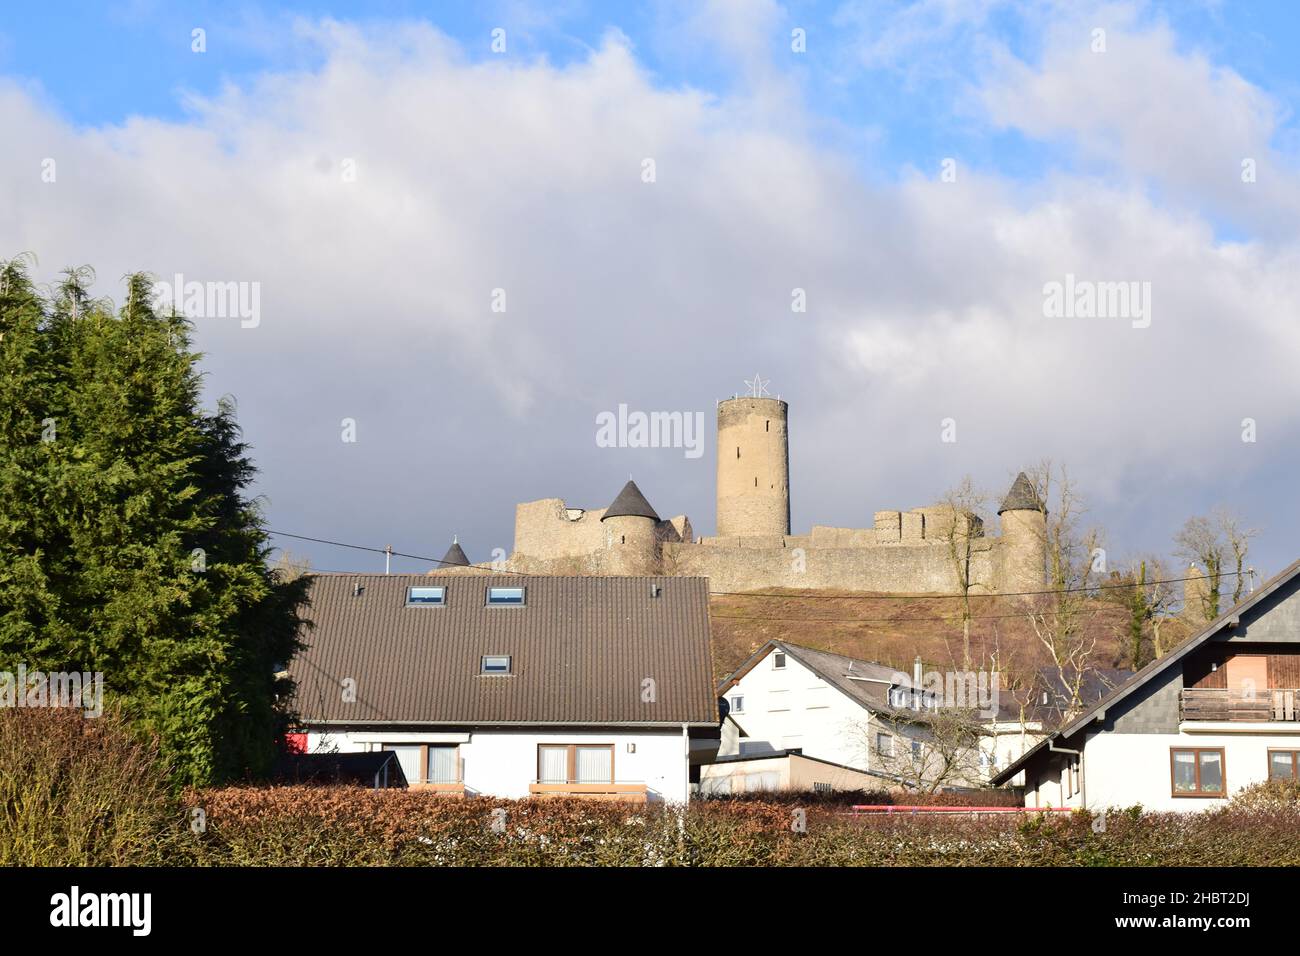 Vista attraverso i tetti del villaggio al castello Nürburg Foto Stock